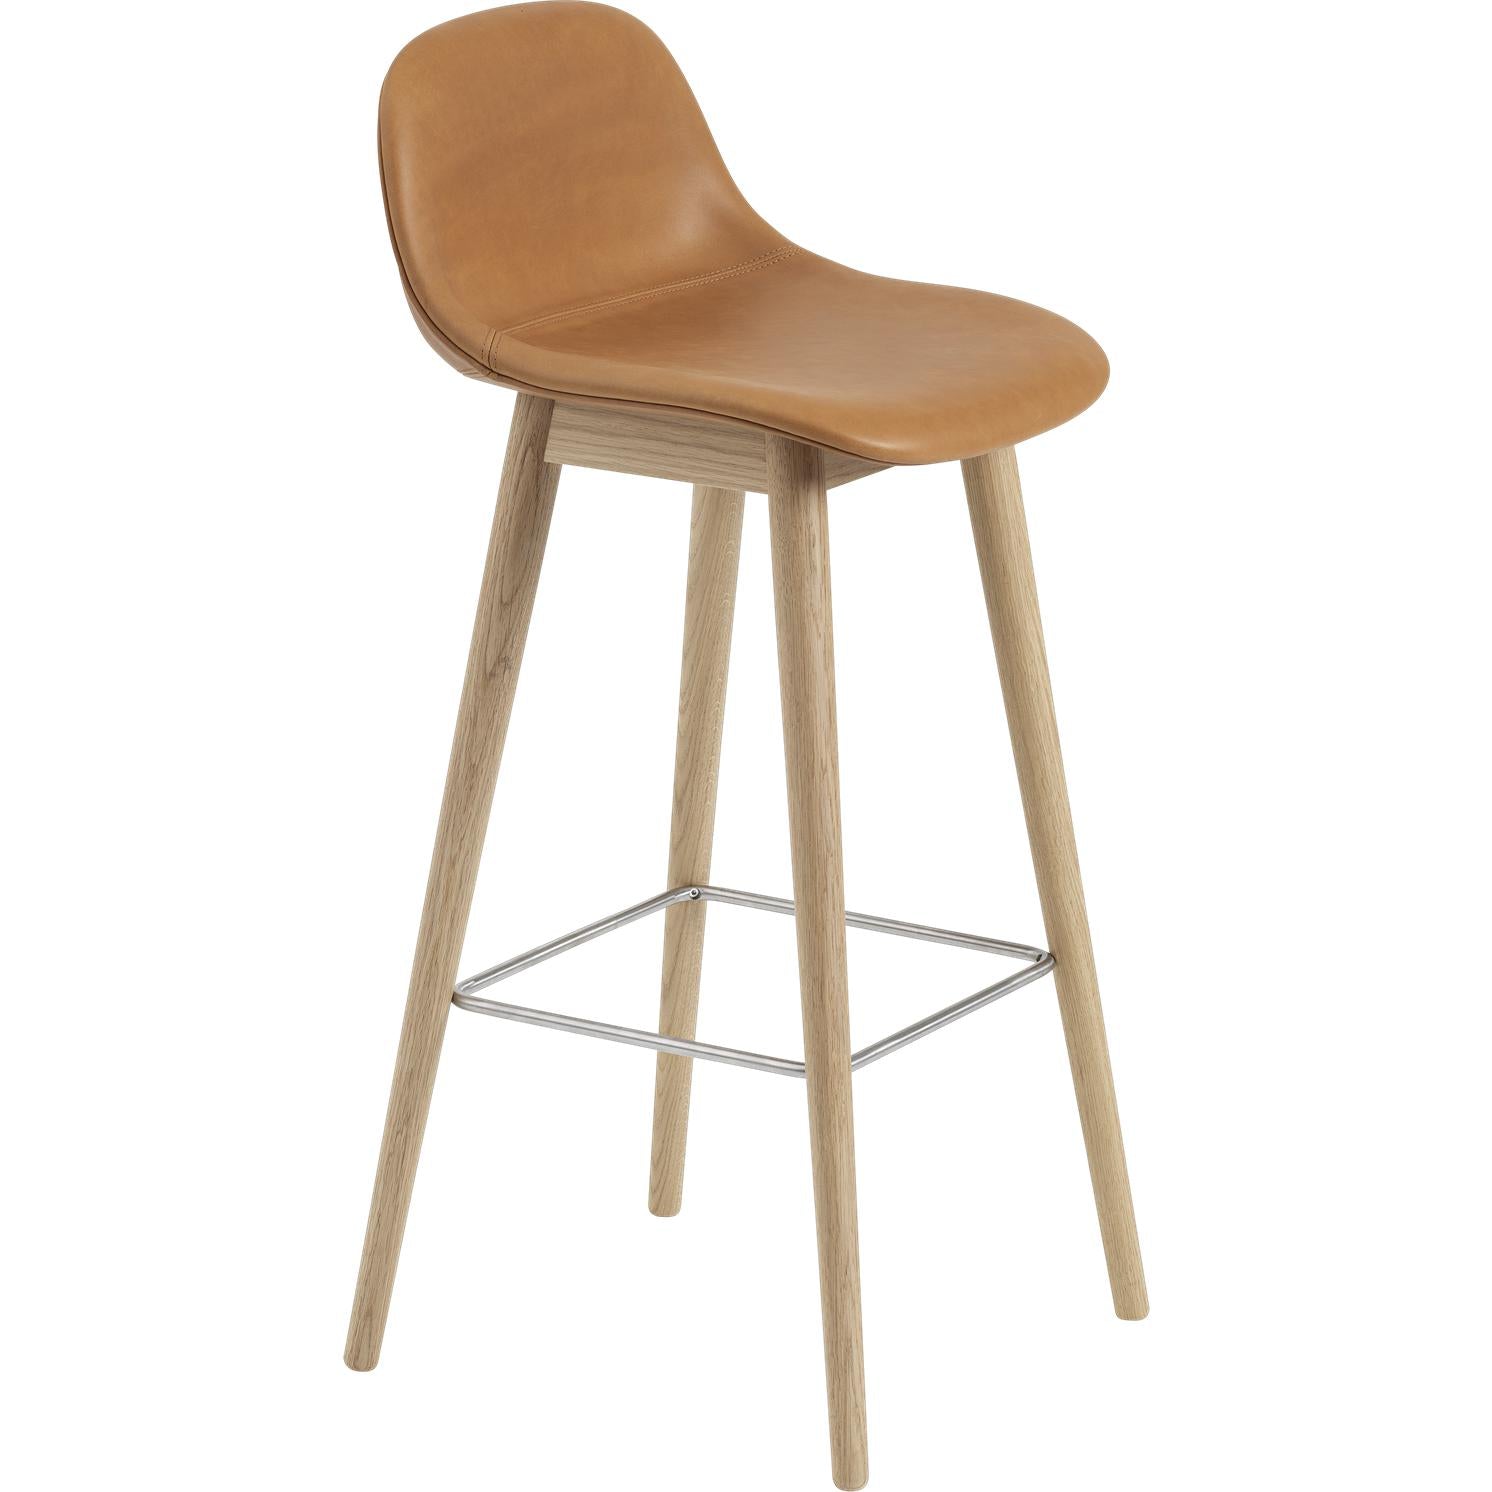 Chaise de bar à fibre Muuto avec des jambes en bois, un siège en fibre / cuir, en cuir cognac marron